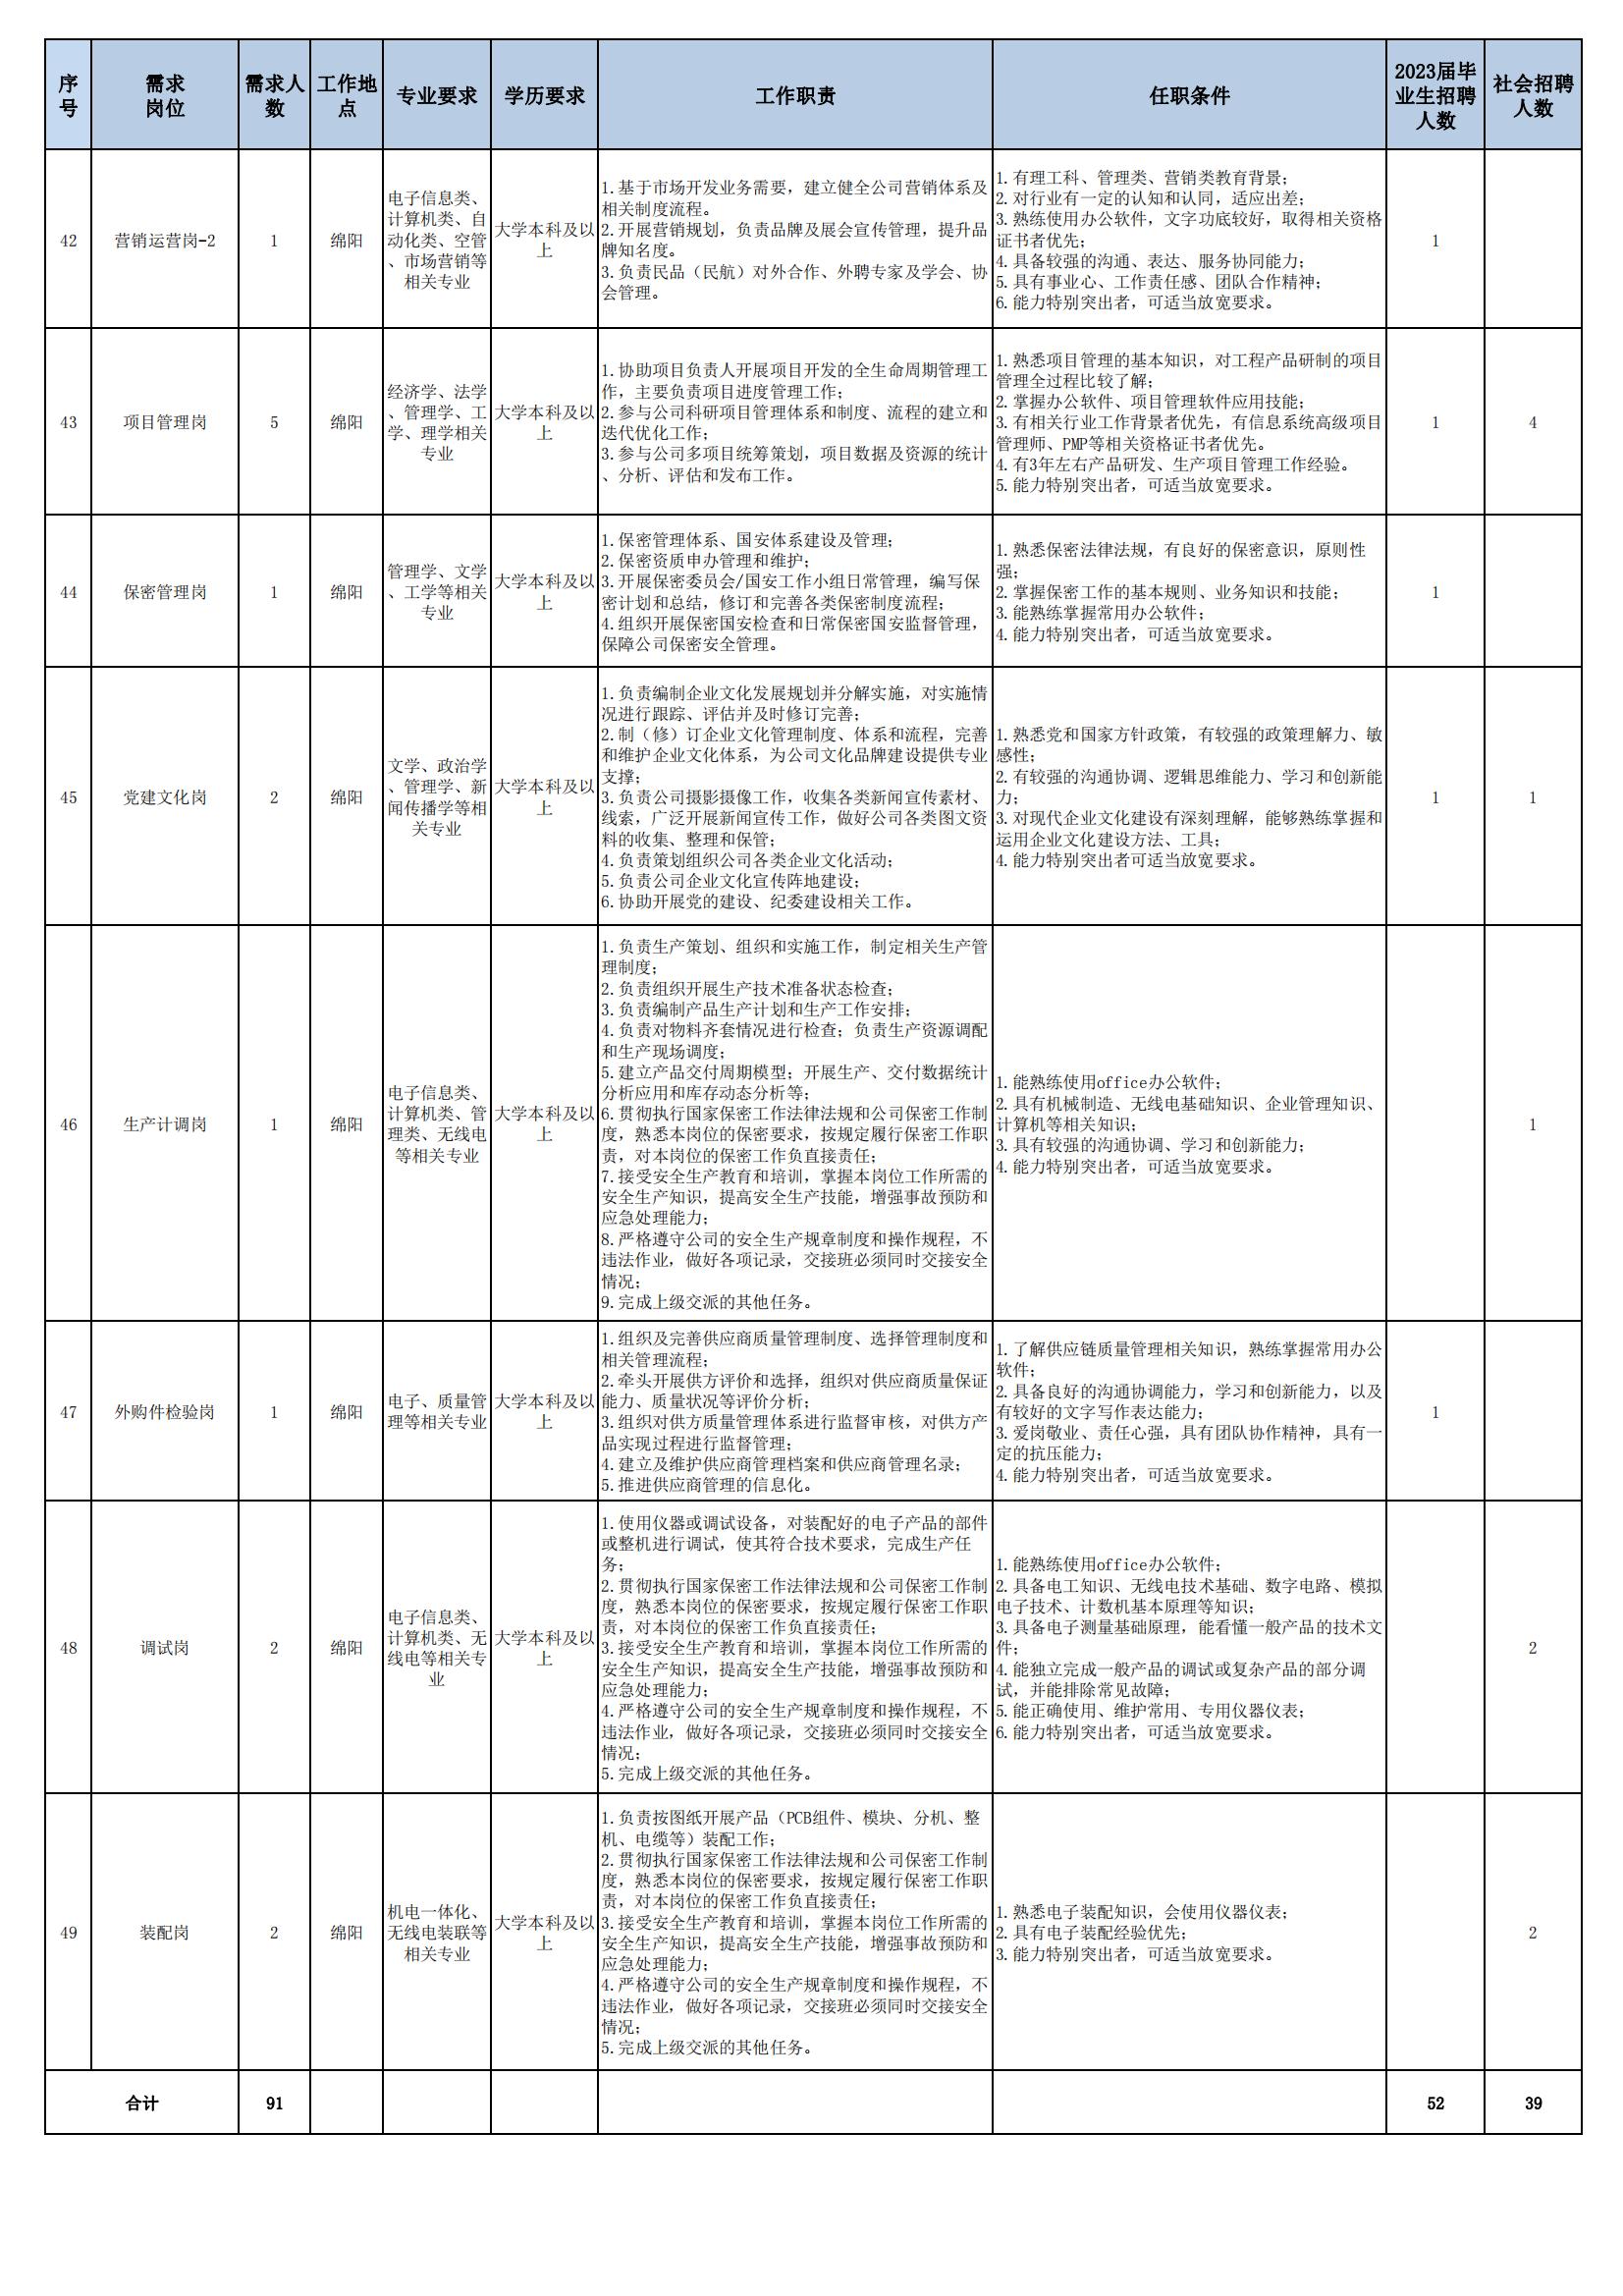 01 四川九洲空管科技有限责任公司招聘岗位列表 - 招聘公告（07月更新）_05.jpg